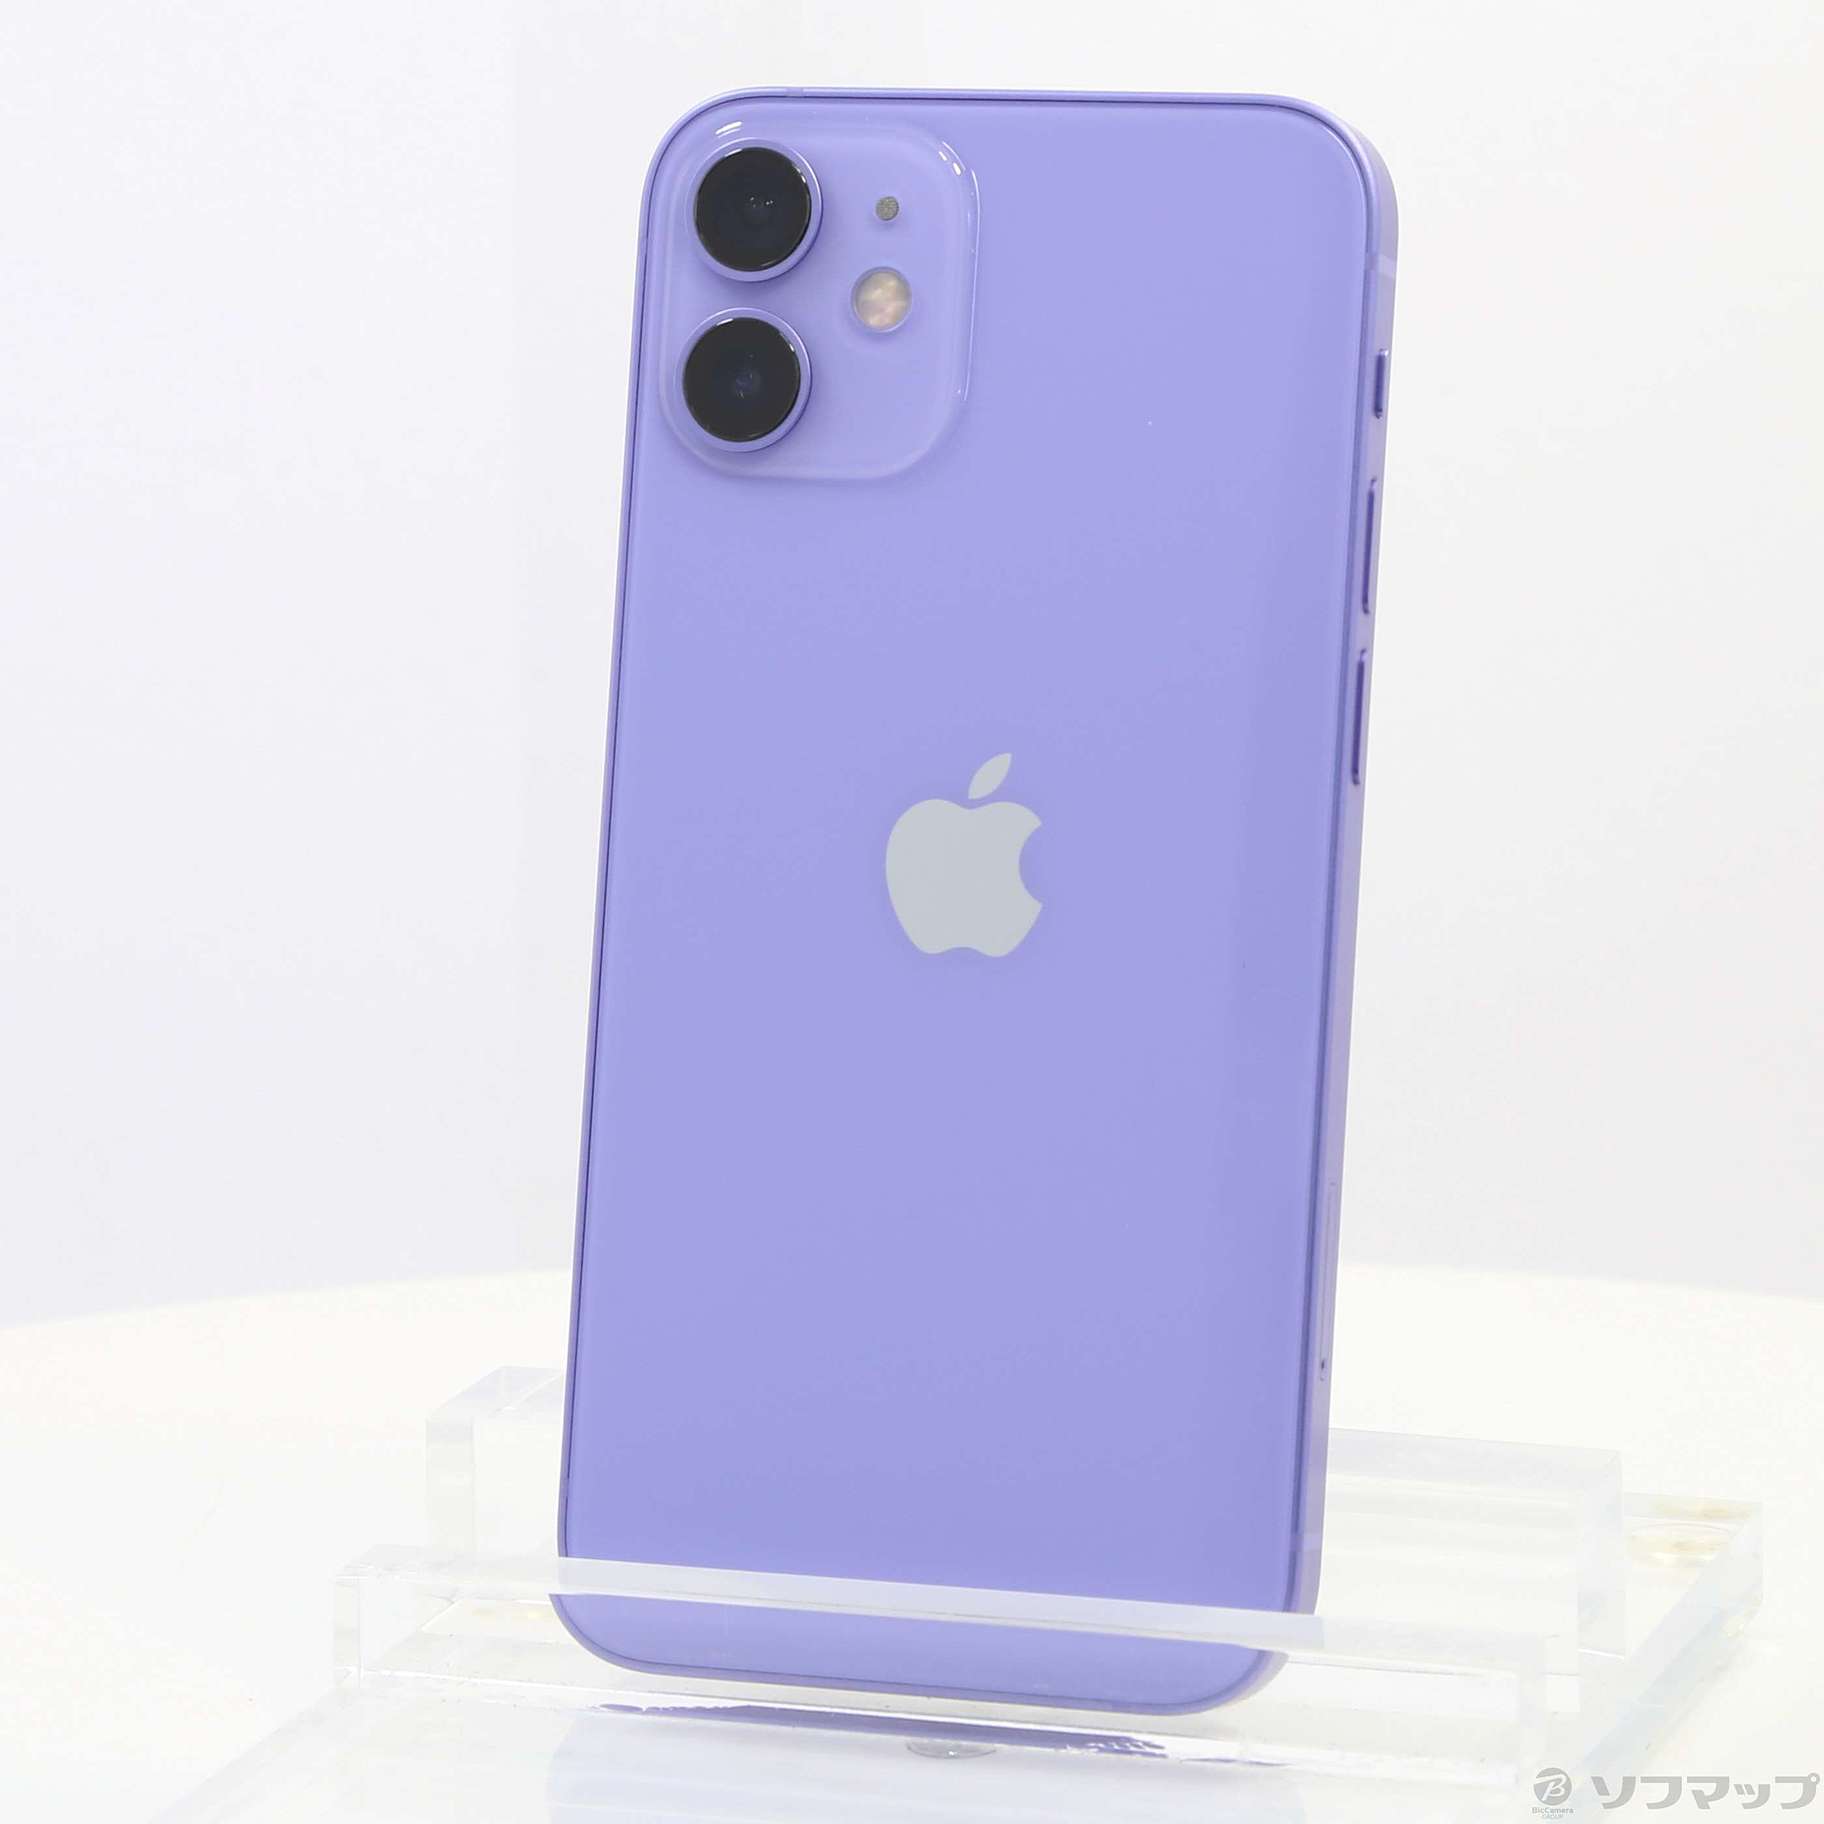 Apple iphone 12 mini 256gb purple apple macbook pro a1297 specs